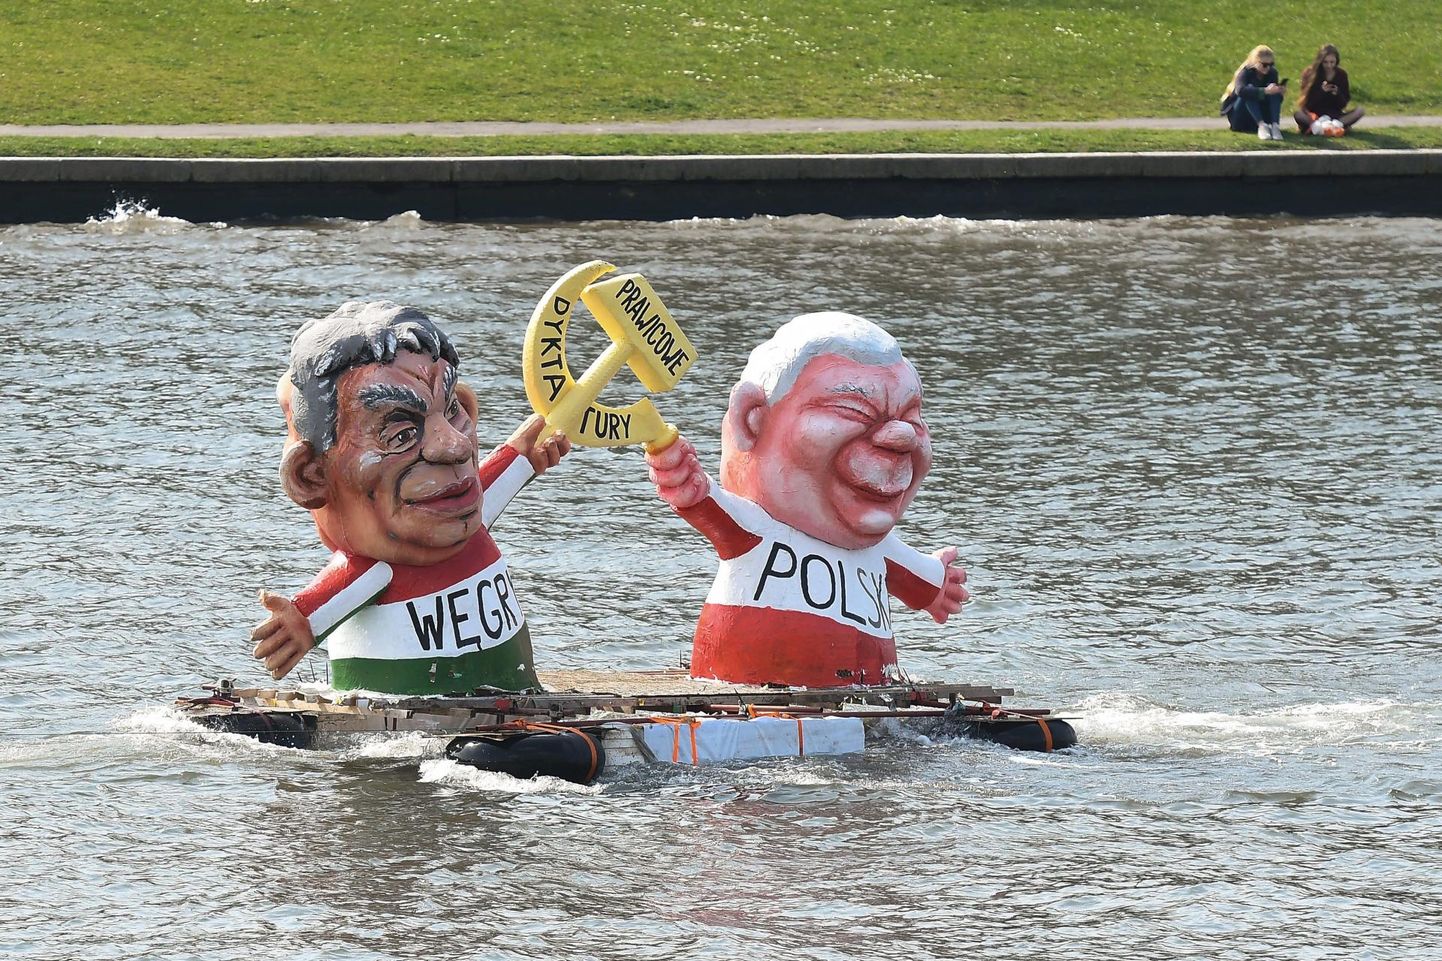 Satiiriline aktsioon Krakówis, kus kujutatakse Ungari peaministrit Viktor Orbánit ja Poola valitsuspartei PiS juhti Jarosław Kaczyńskit. 